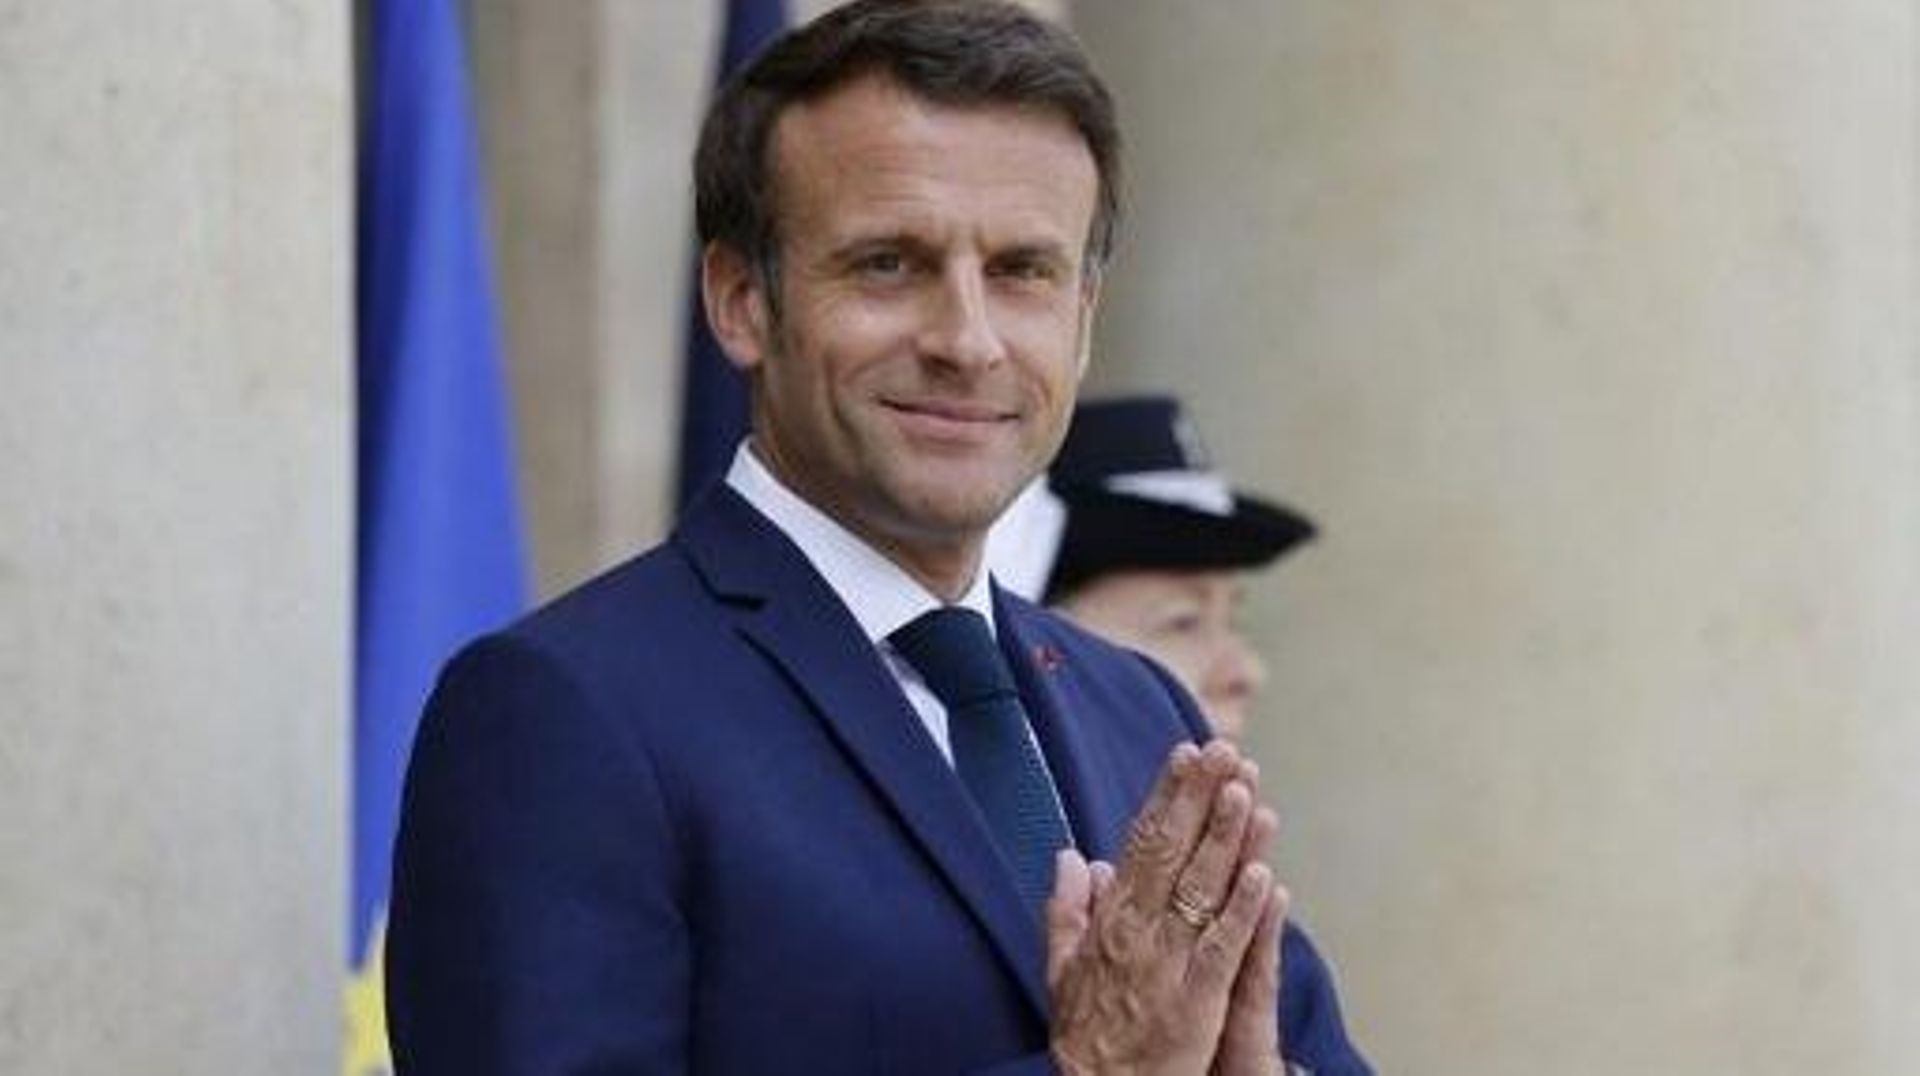 Conflit en Ukraine - Les livraisons d'armes de la France vont gagner "en intensité", dit Macron à Zelensky